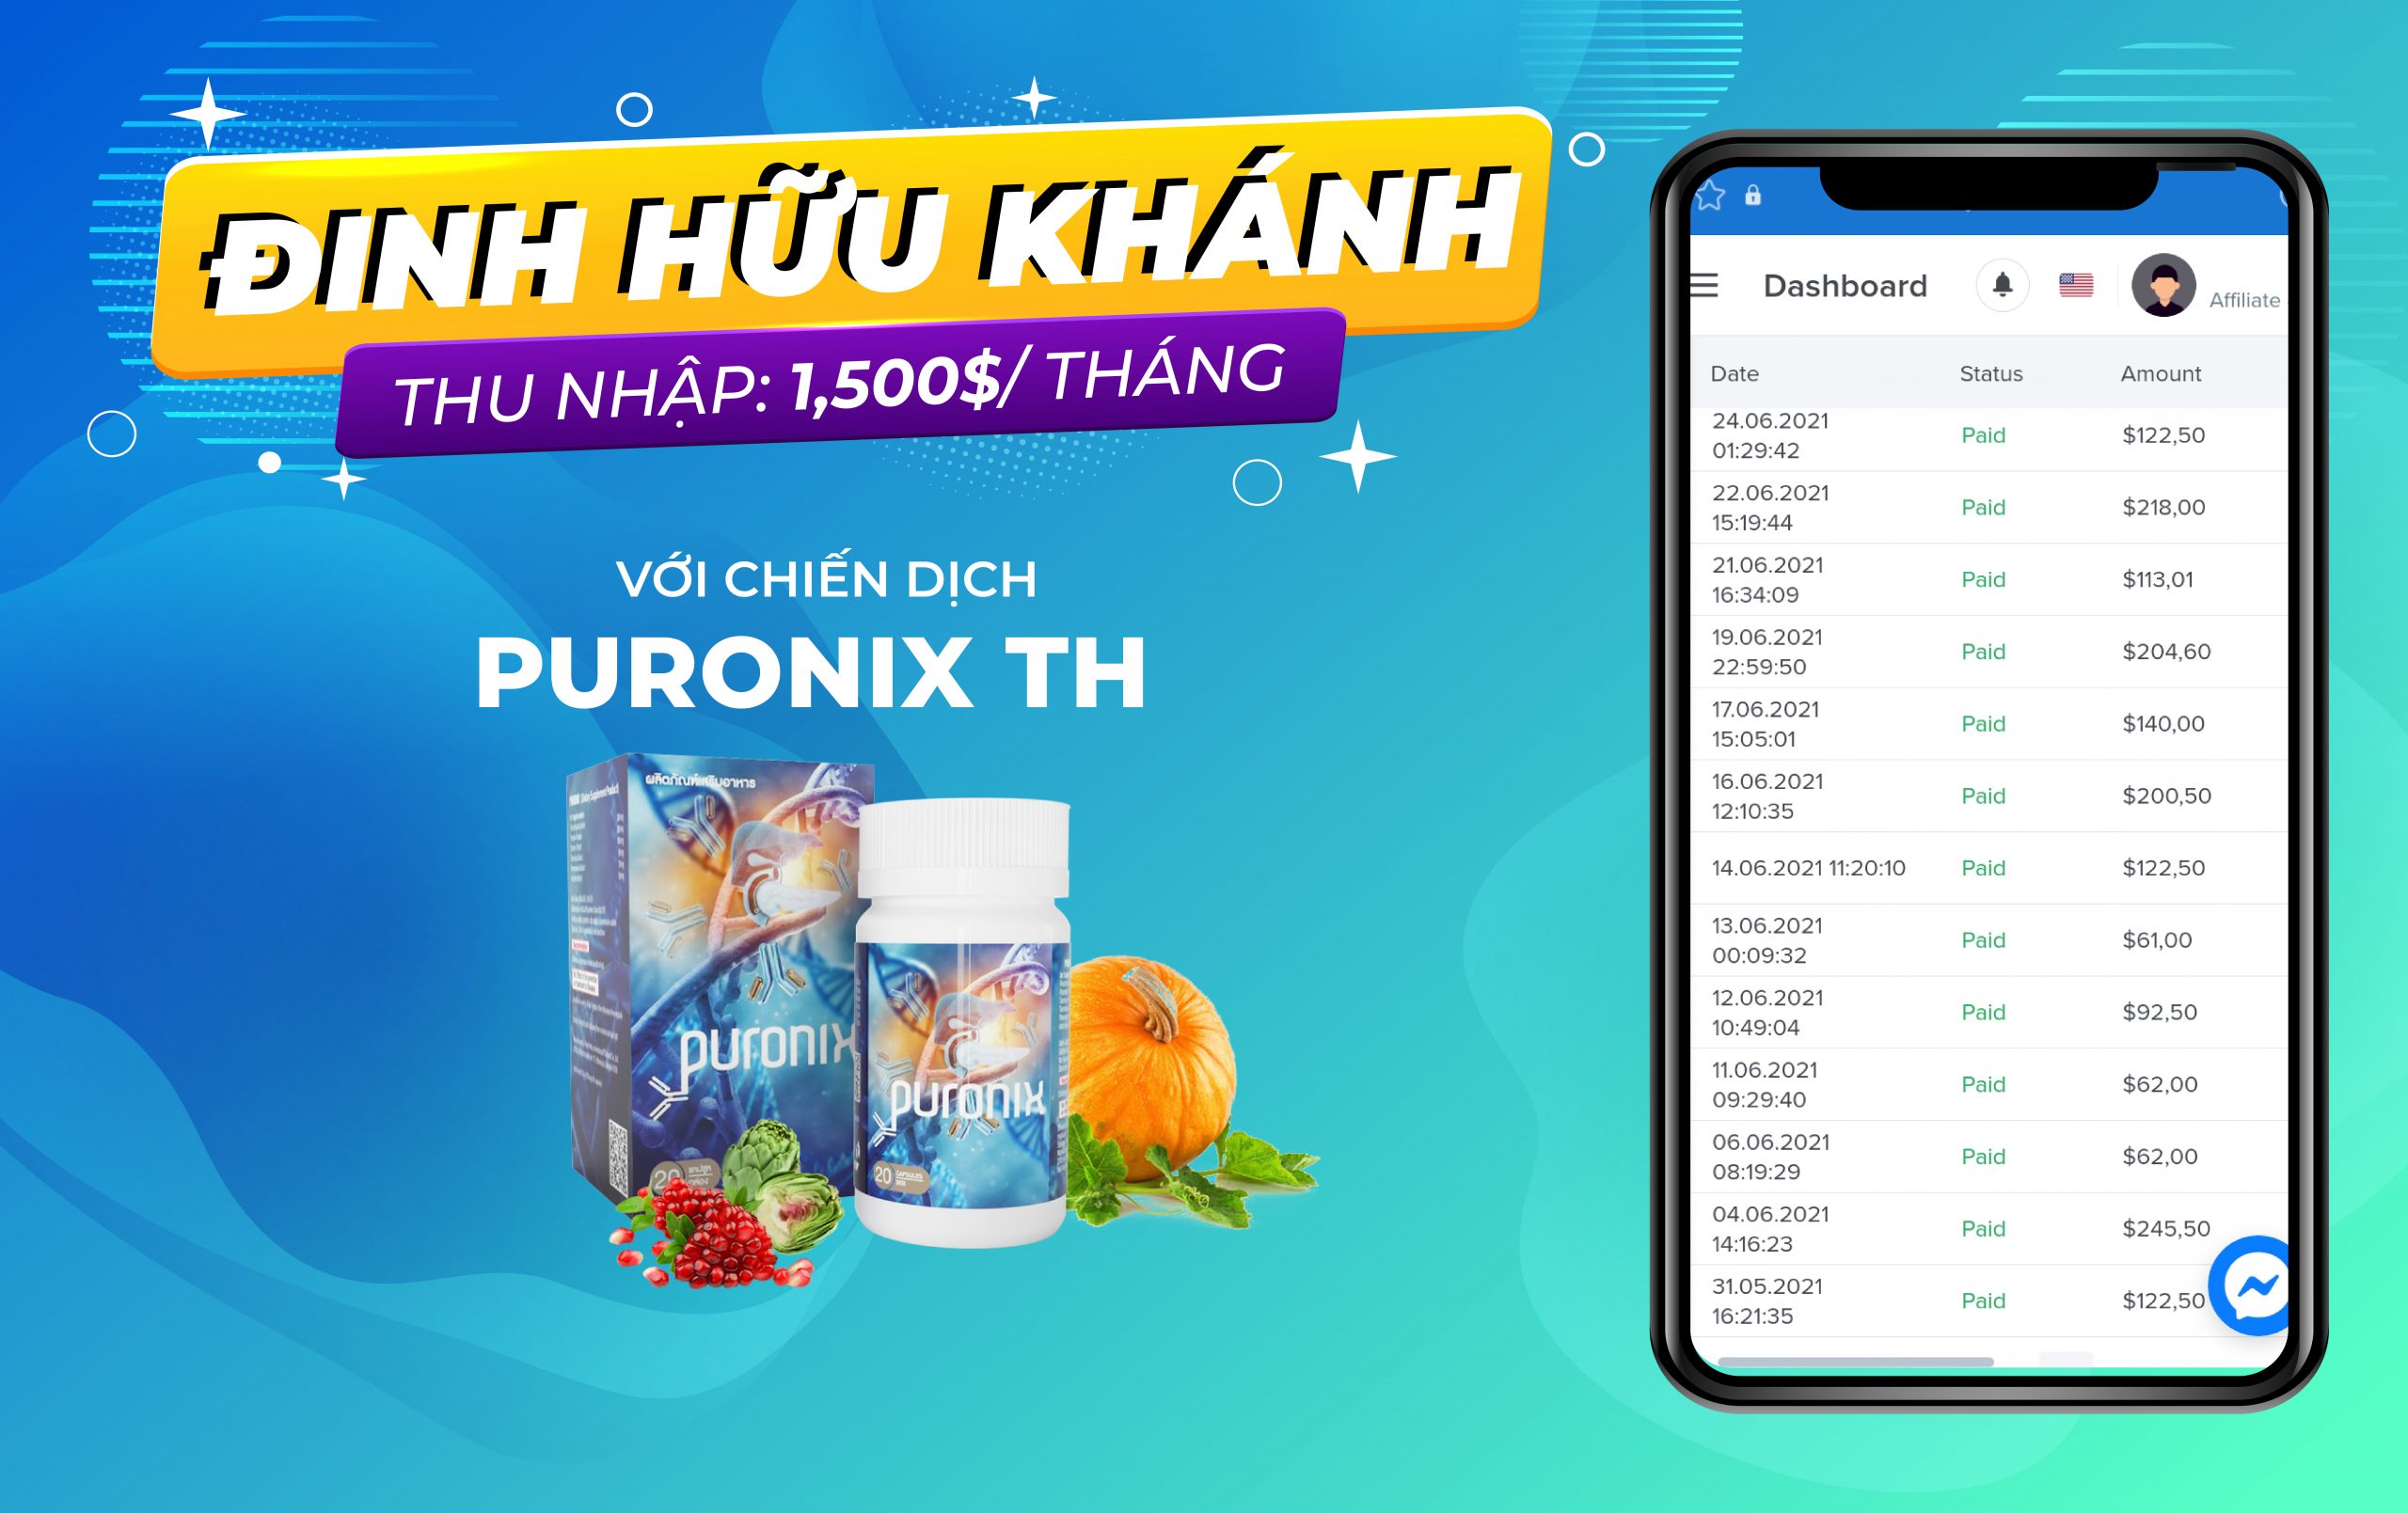 Kiếm 1,500$/tháng với chiến dịch Puronix Thái